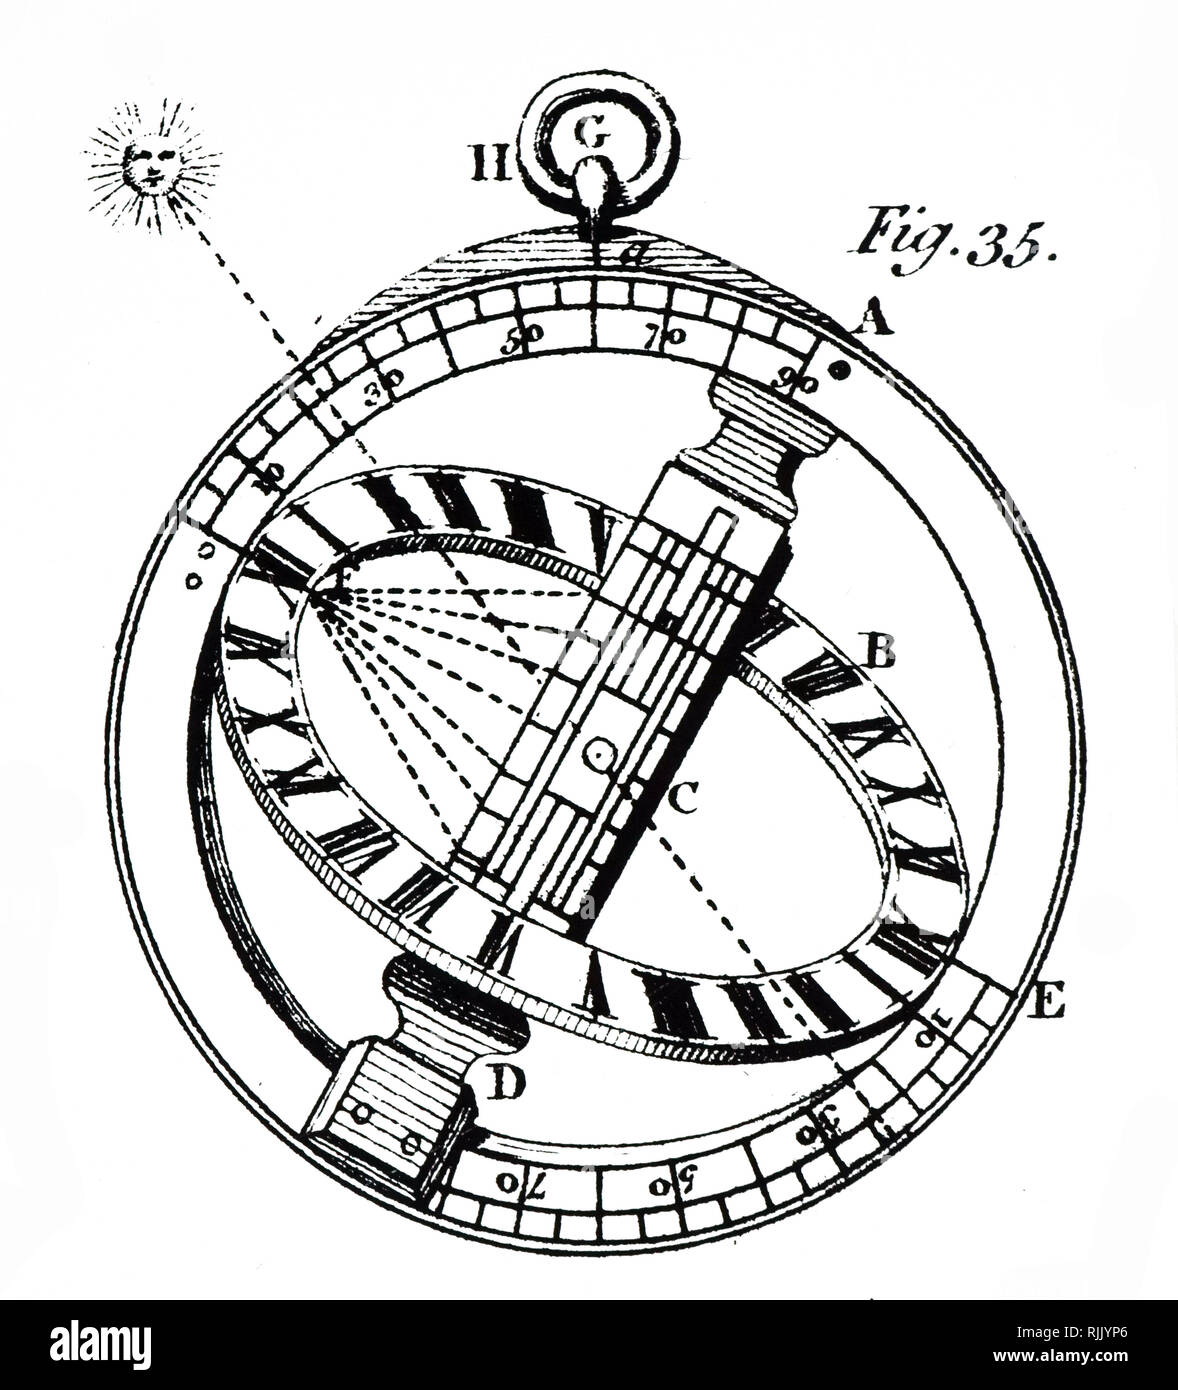 Una xilografia incisione raffigurante un anello dial, che mostra come in questo modello, la luce del sole passa attraverso un foro al centro e cade sull'anello inciso. Datata xviii secolo Foto Stock